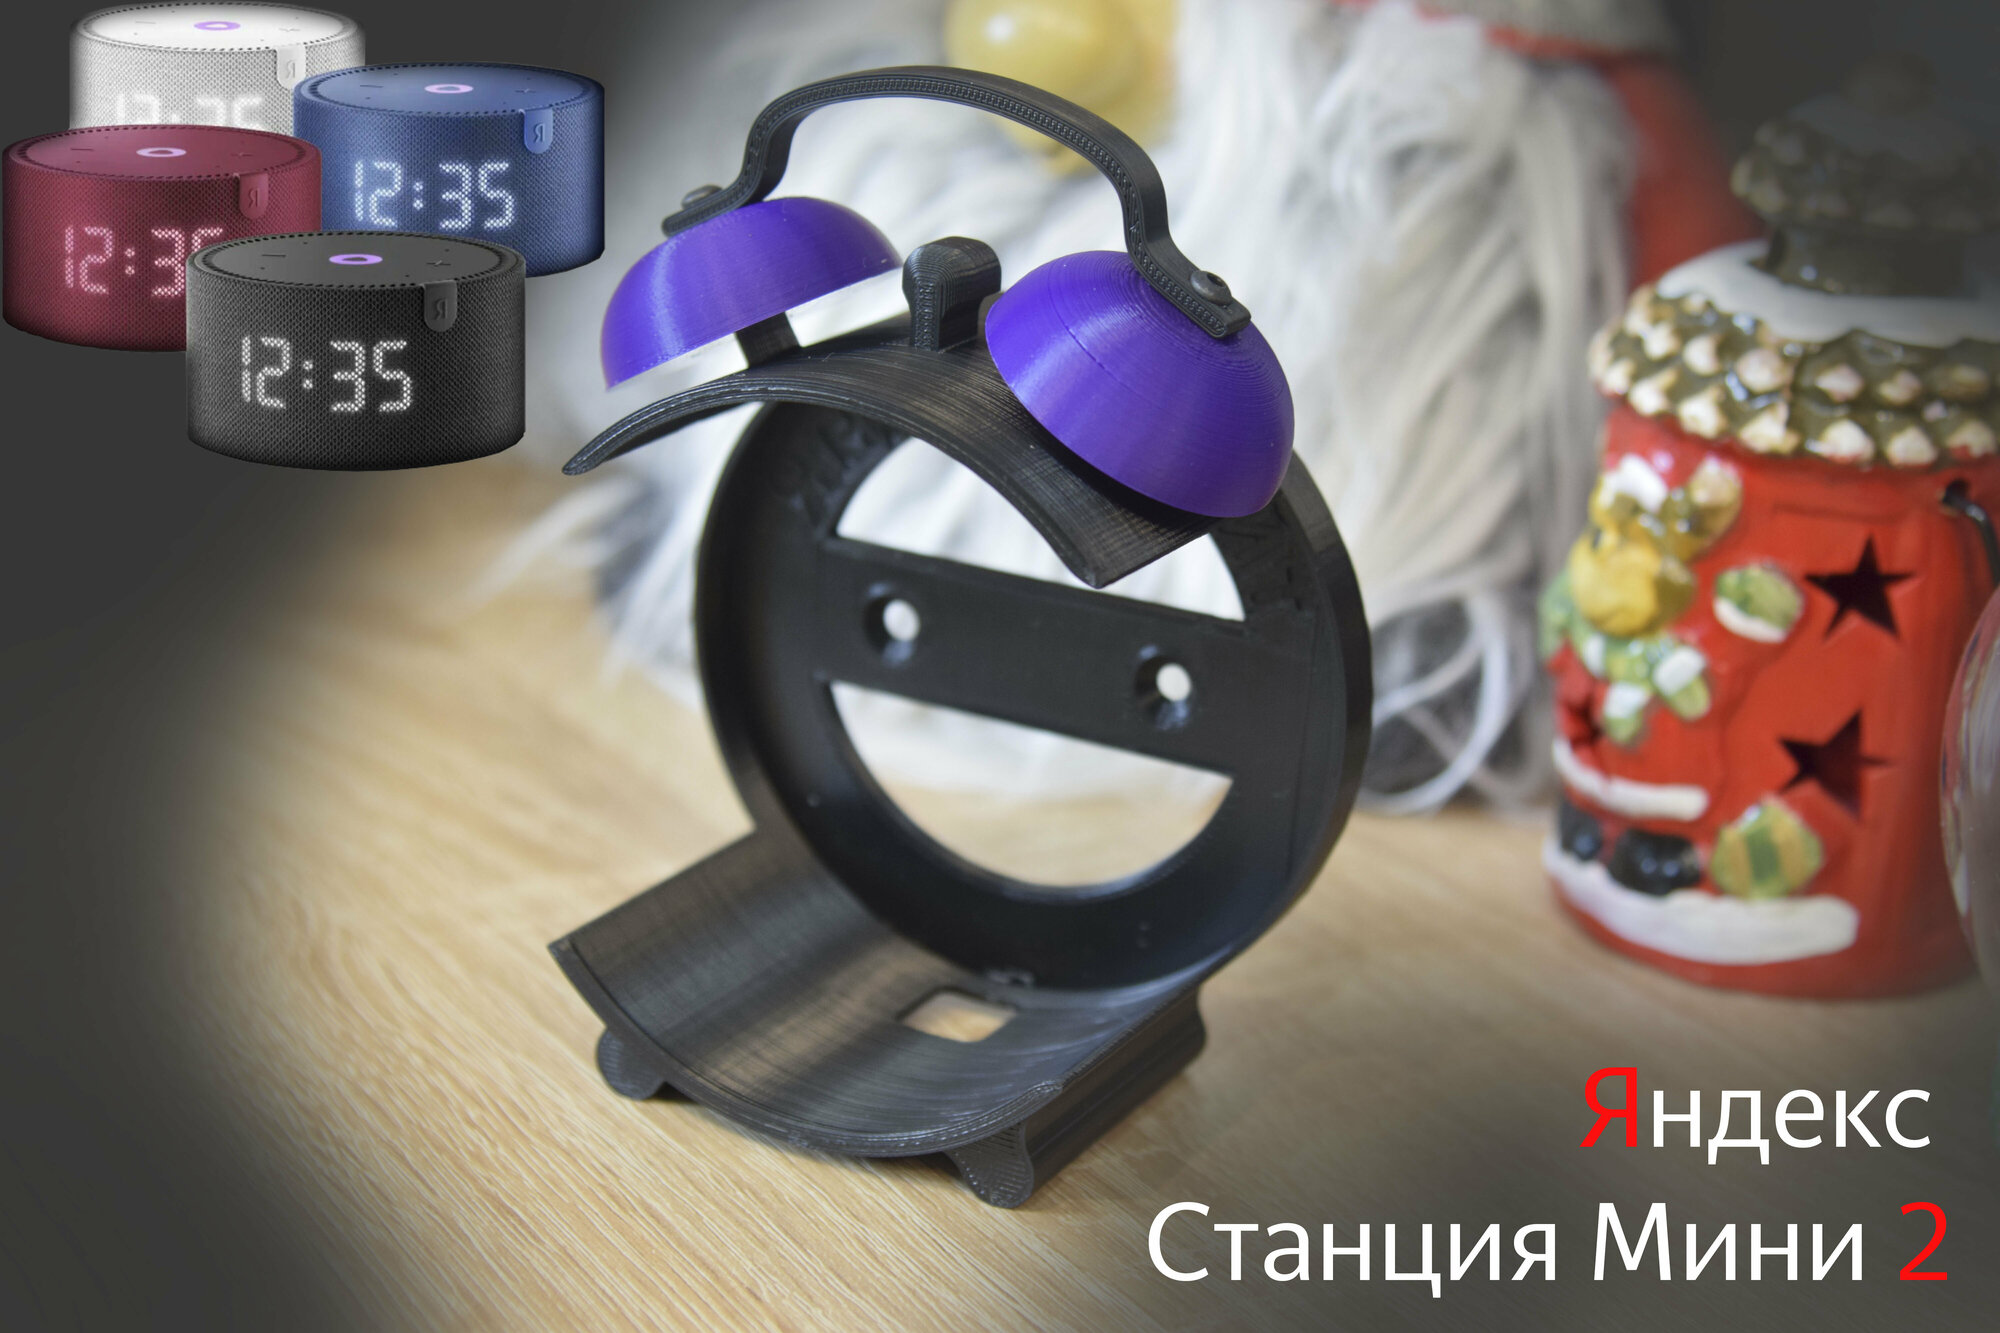 Подставка для Яндекс Cтанции Мини 2 (с часами и без часов) (черная с фиолетовым)